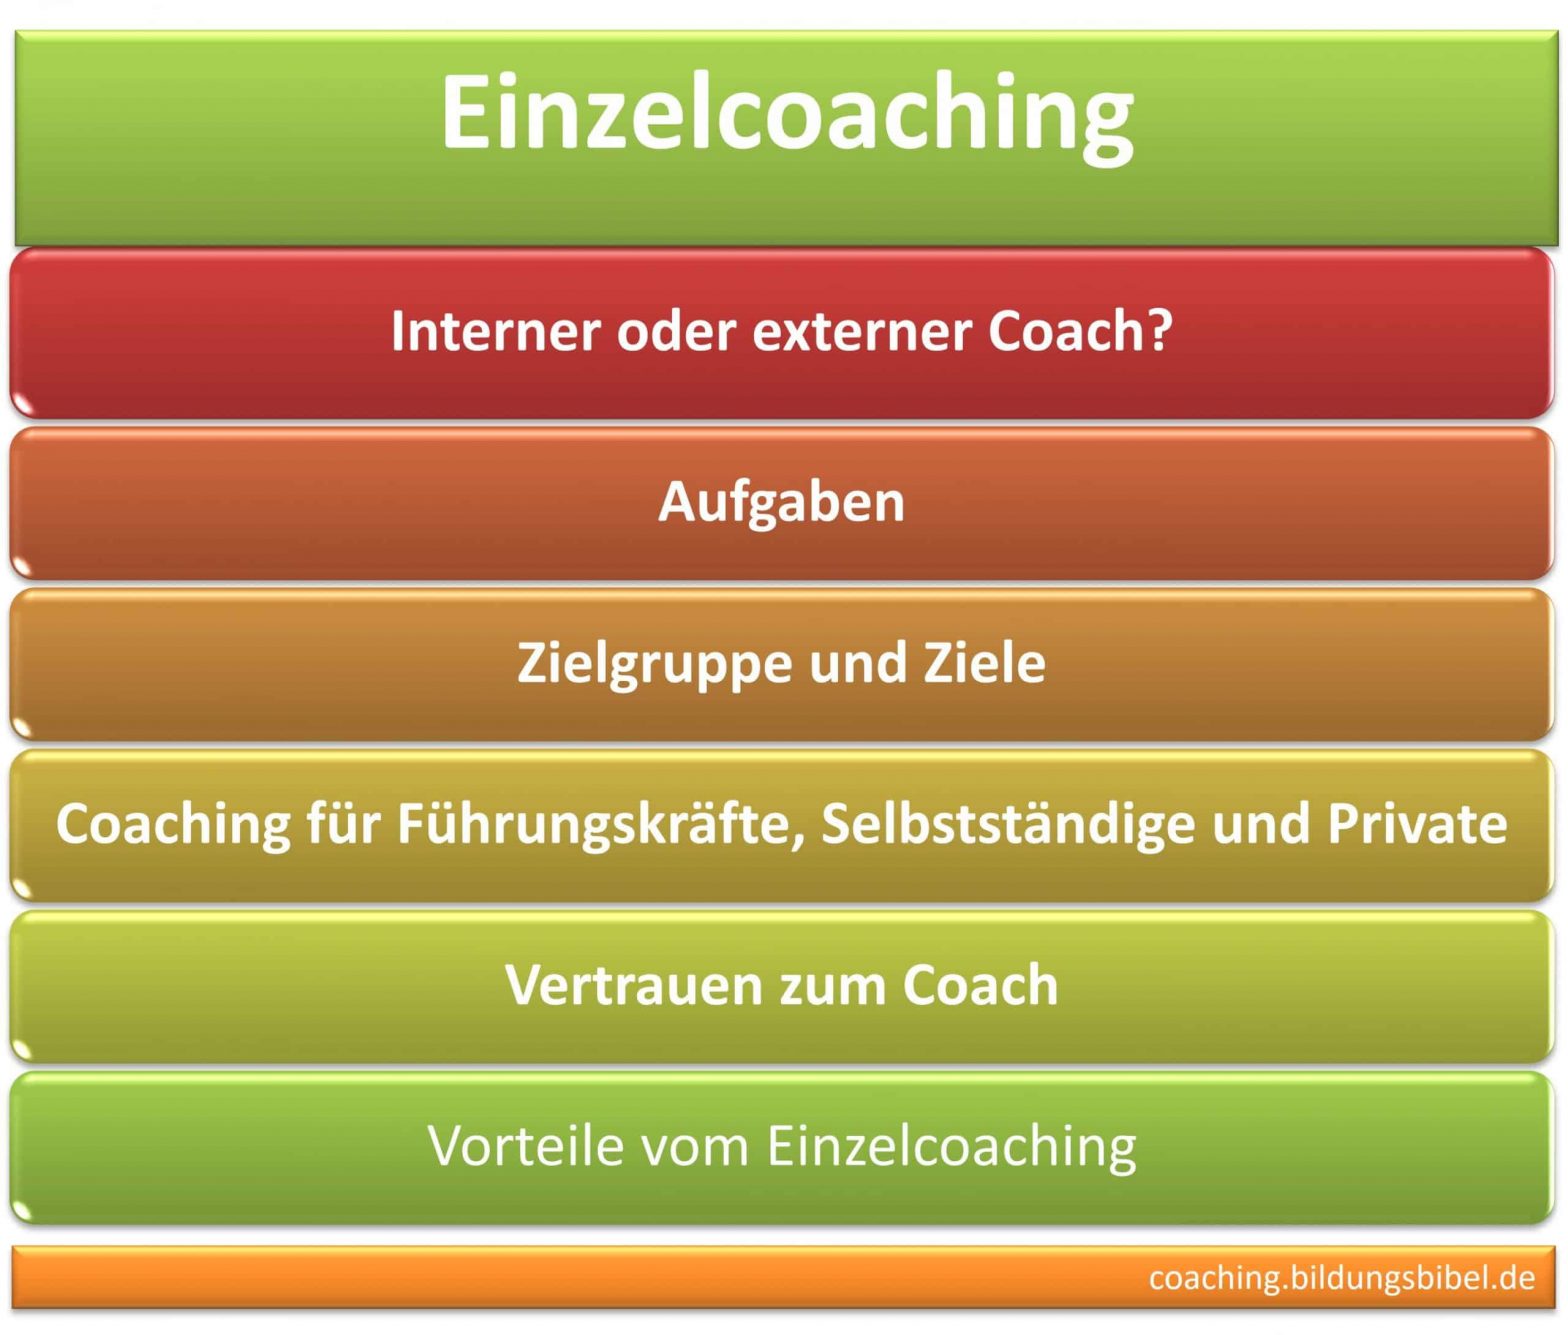 Einzelcoaching interner o. externer Coach, Aufgaben, Zielgruppe, Ziele, Führung, Selbstständige, Privat, Vertrauen u. Vorteile.